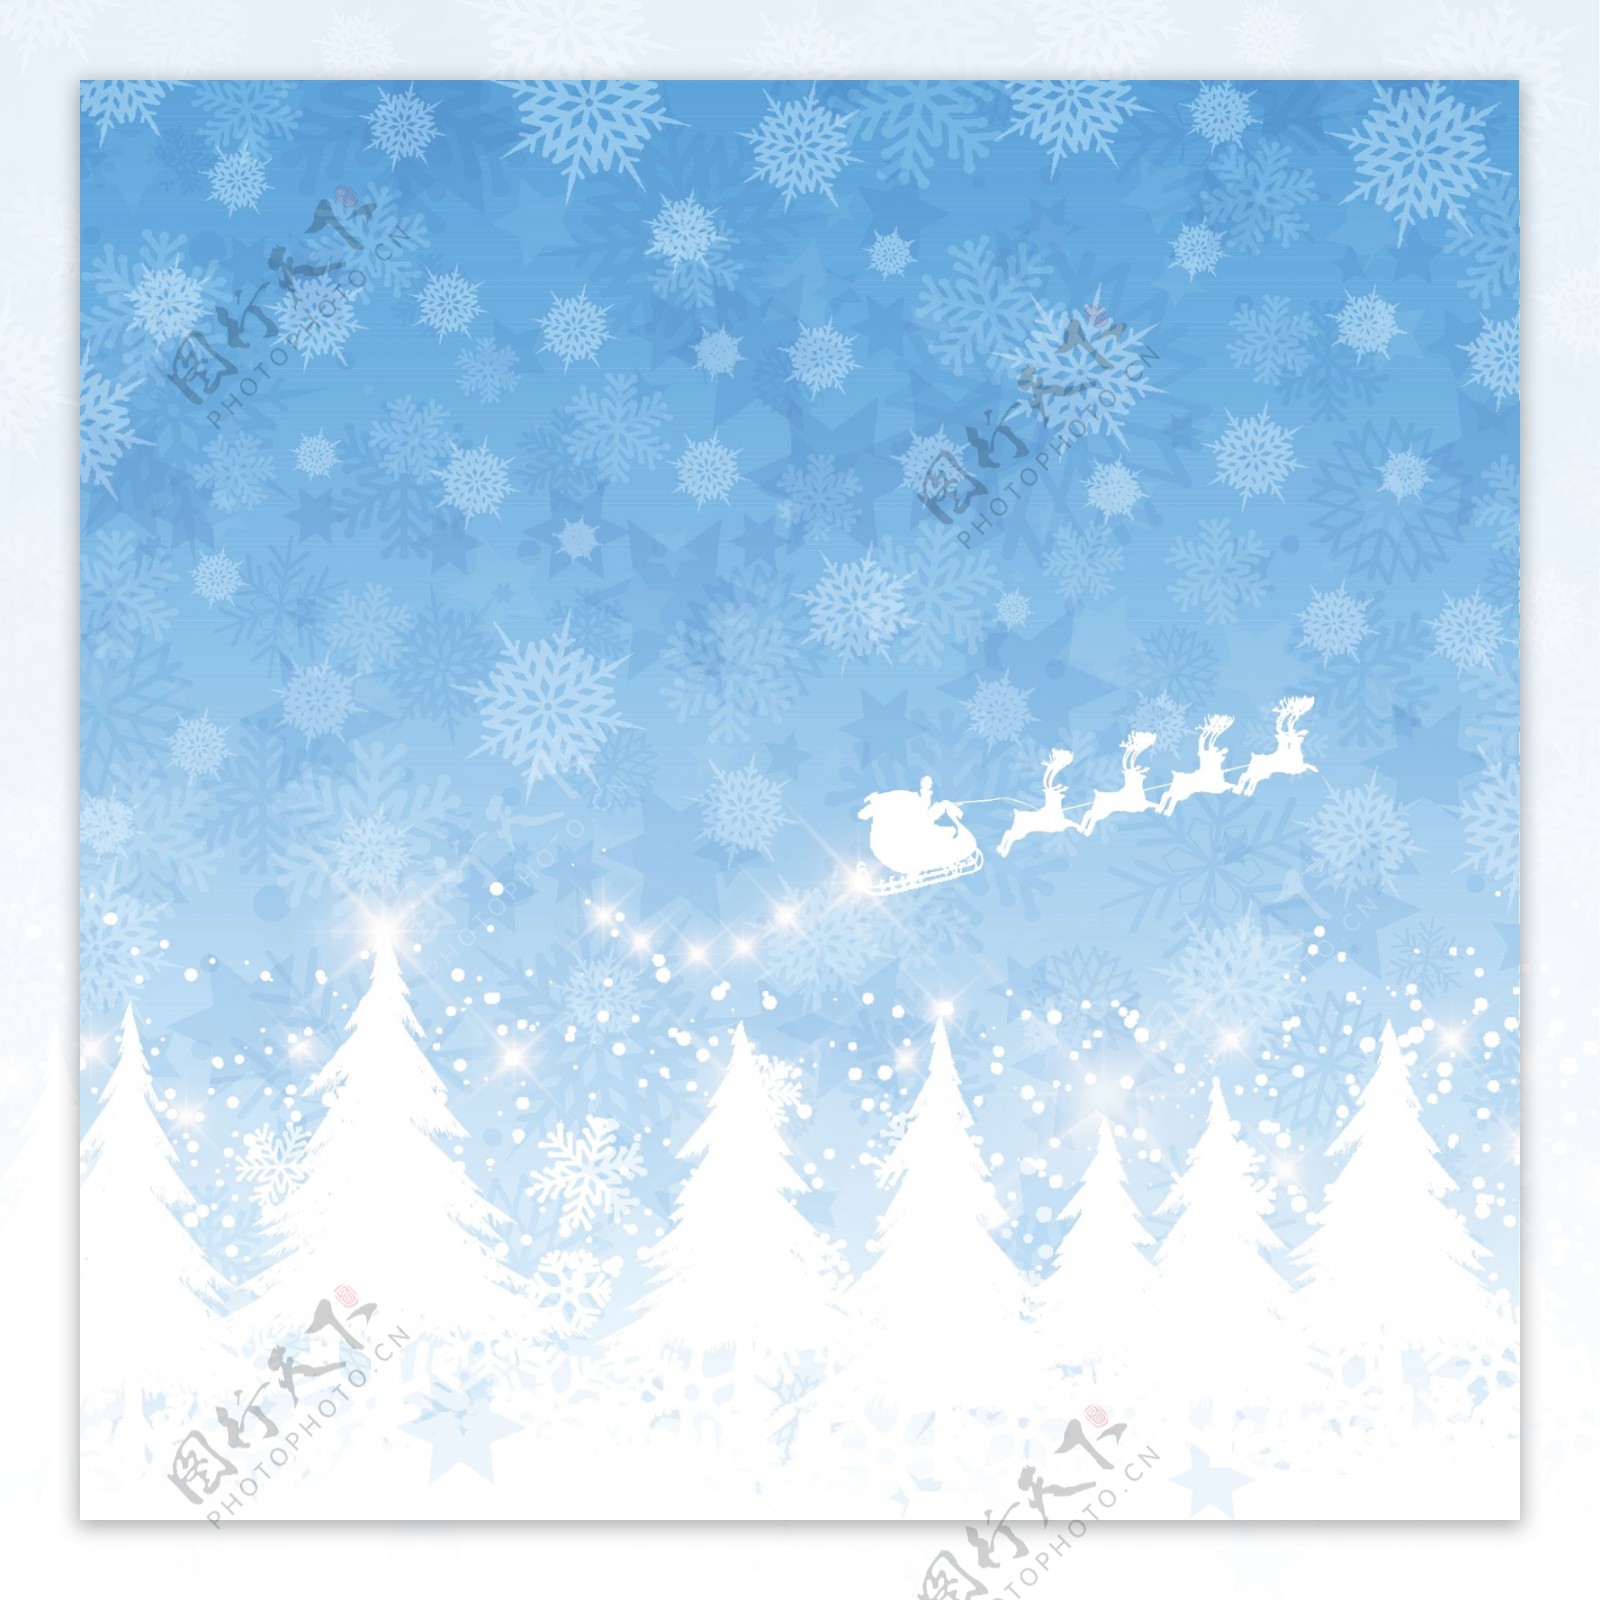 圣诞老人克劳斯在一个雪橇飞行的蓝色背景